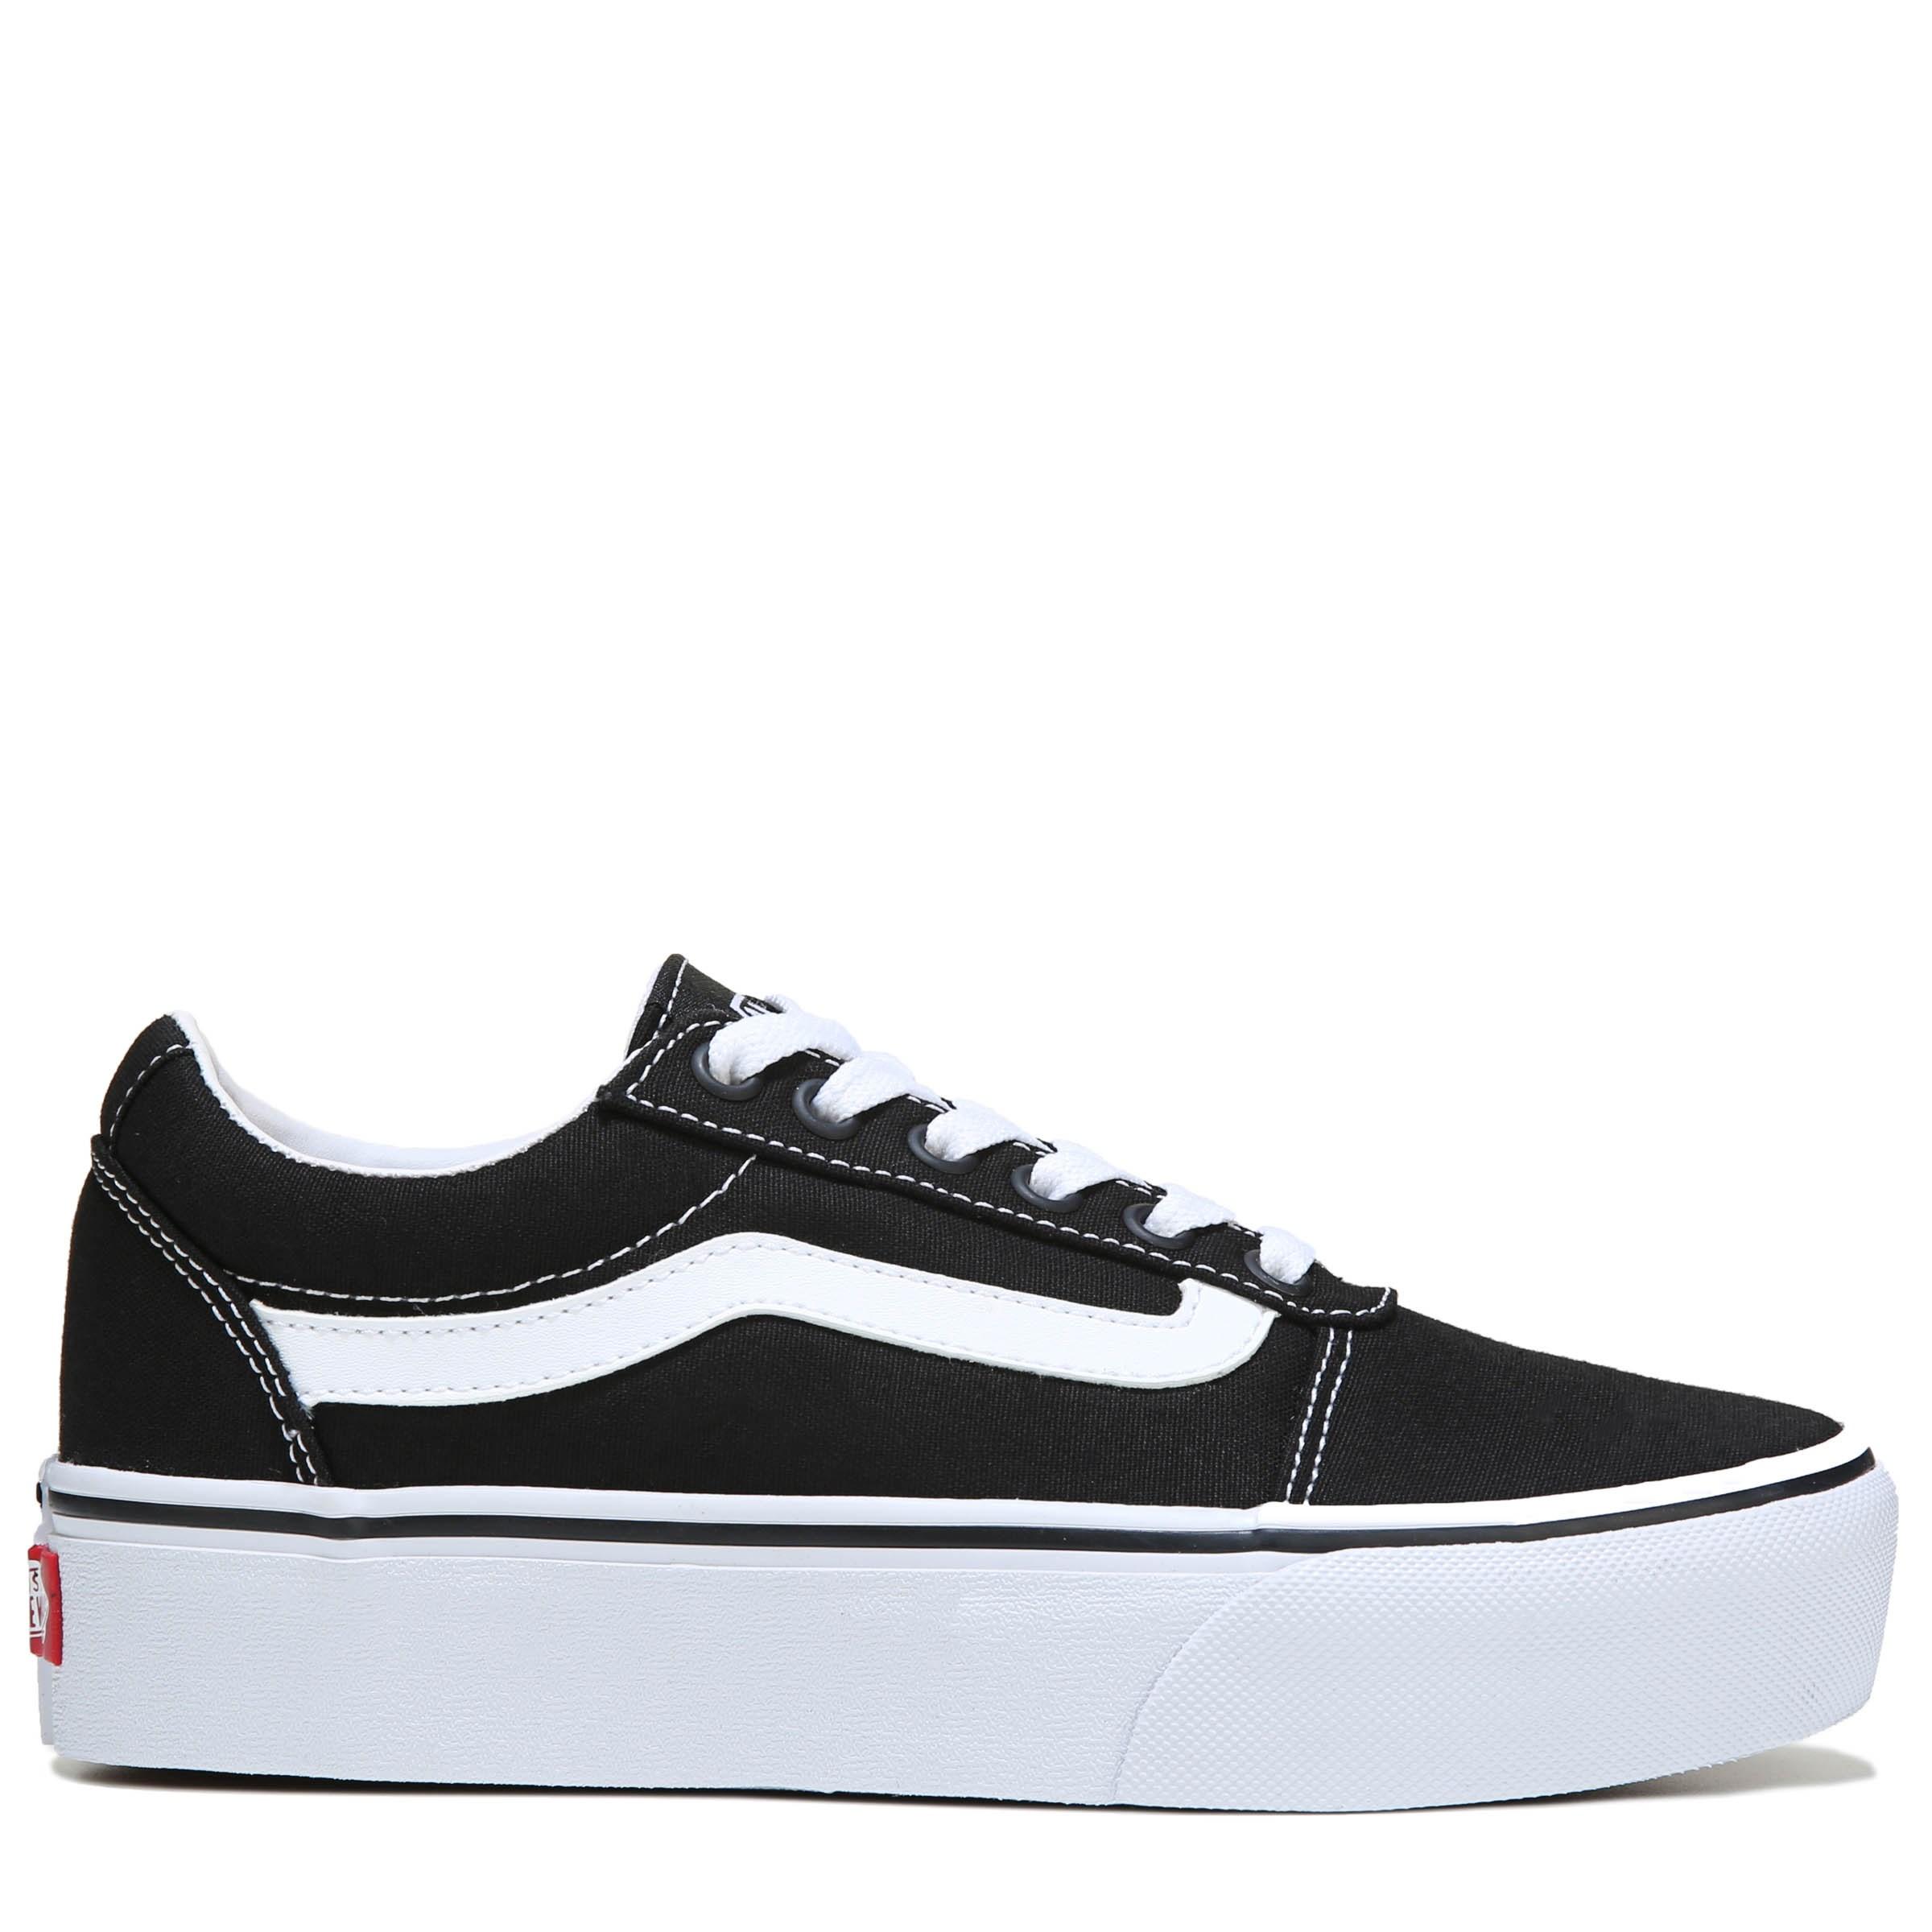 Vans Canvas Ward Platform Sneakers in Black/White (Black) - Lyst